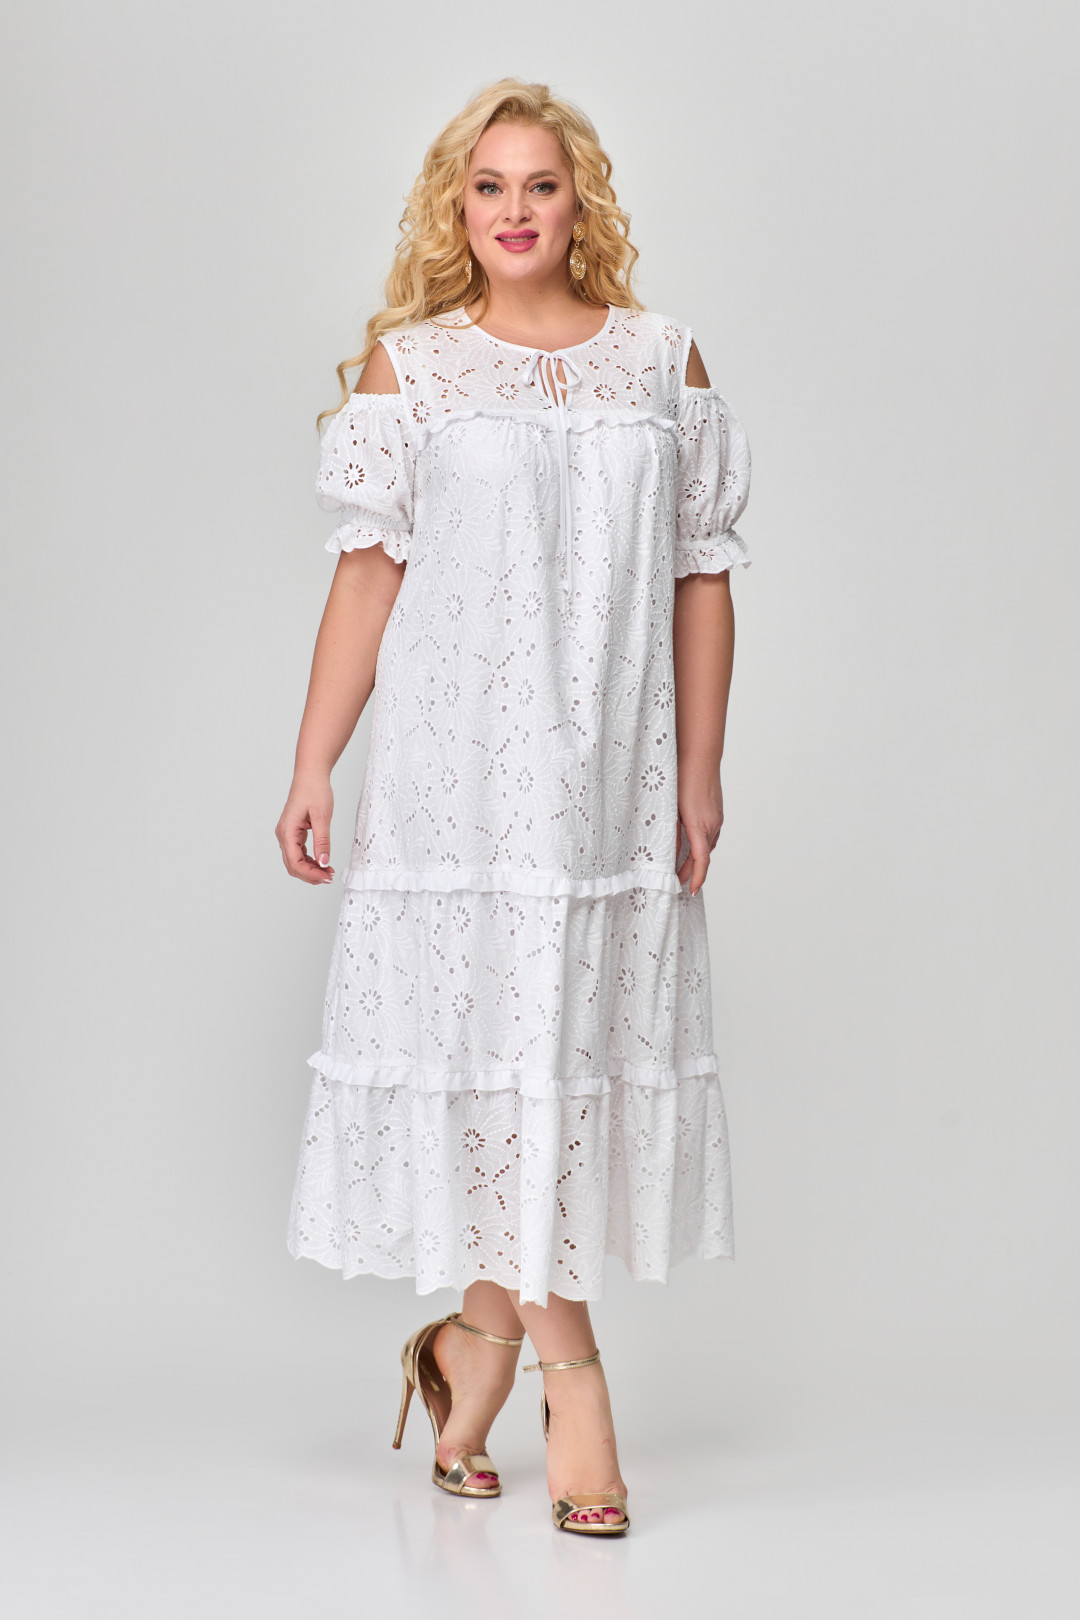 Платье Светлана-Стиль 1670 белый